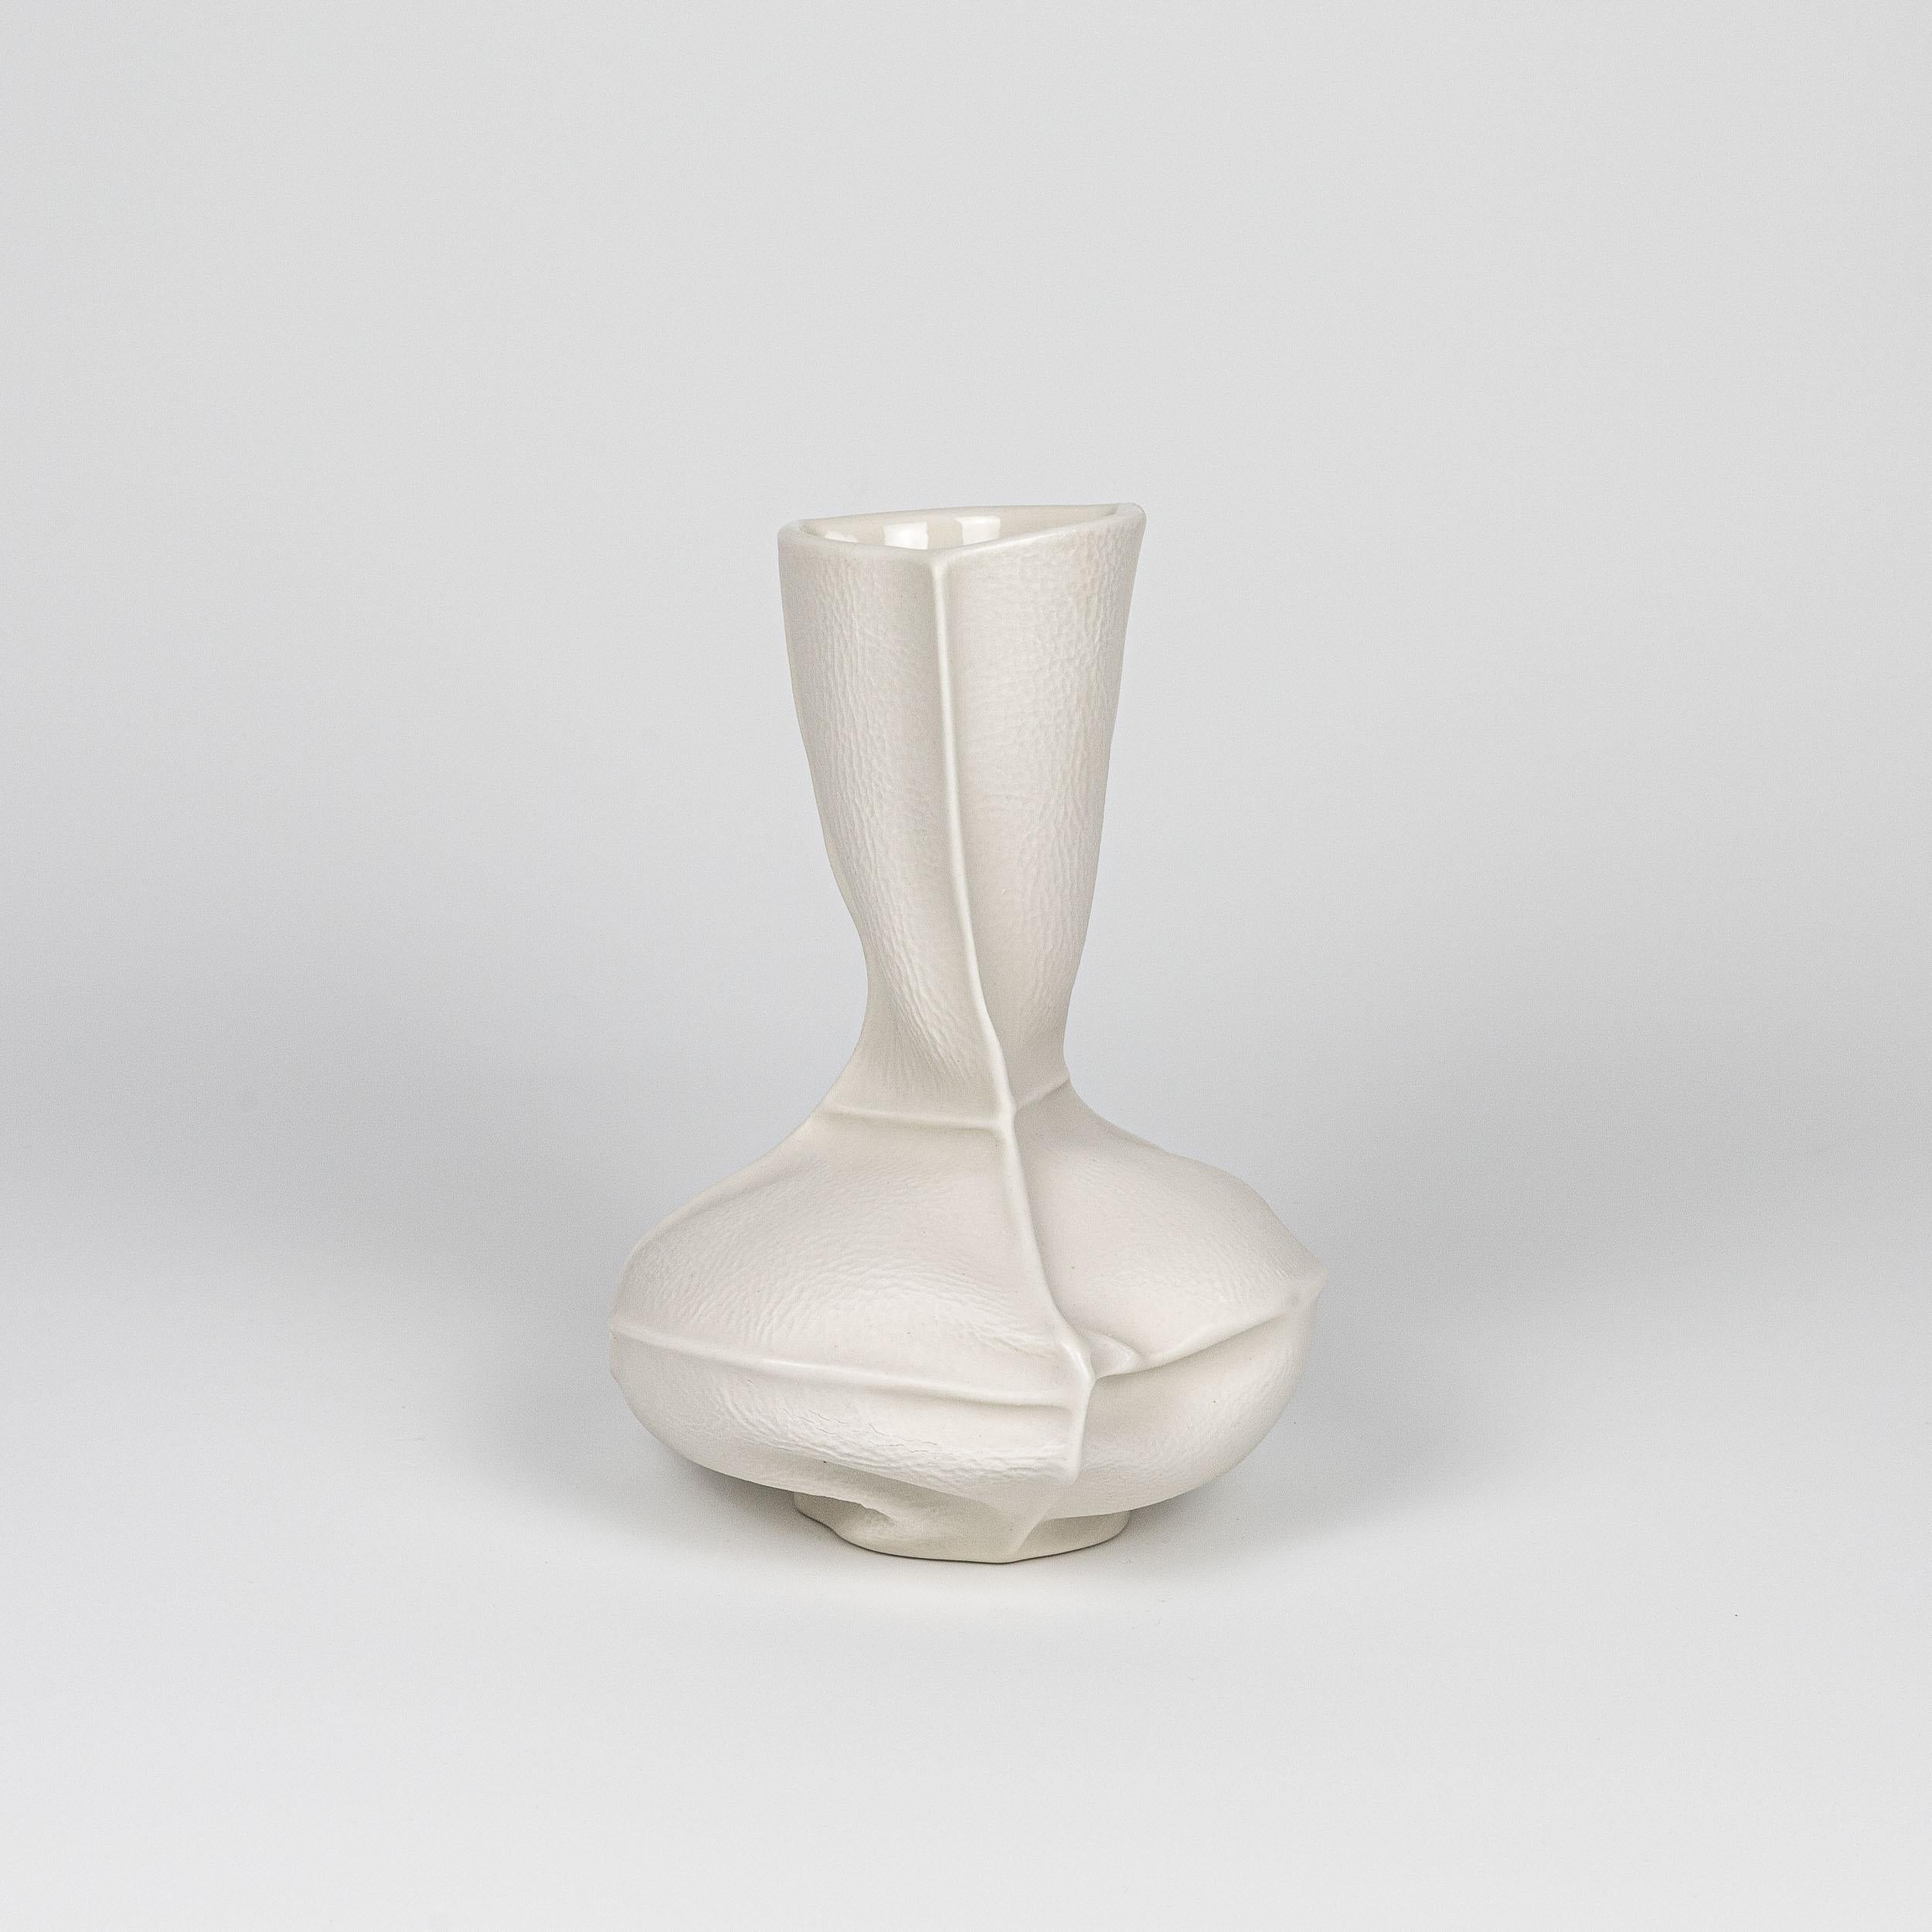 Un vase à fleurs en porcelaine à la forme et à la texture organiques, réalisé en coulant de la porcelaine liquide dans des moules en cuir cousus. Une glaçure transparente est appliquée sur la surface intérieure. En raison du processus de production,